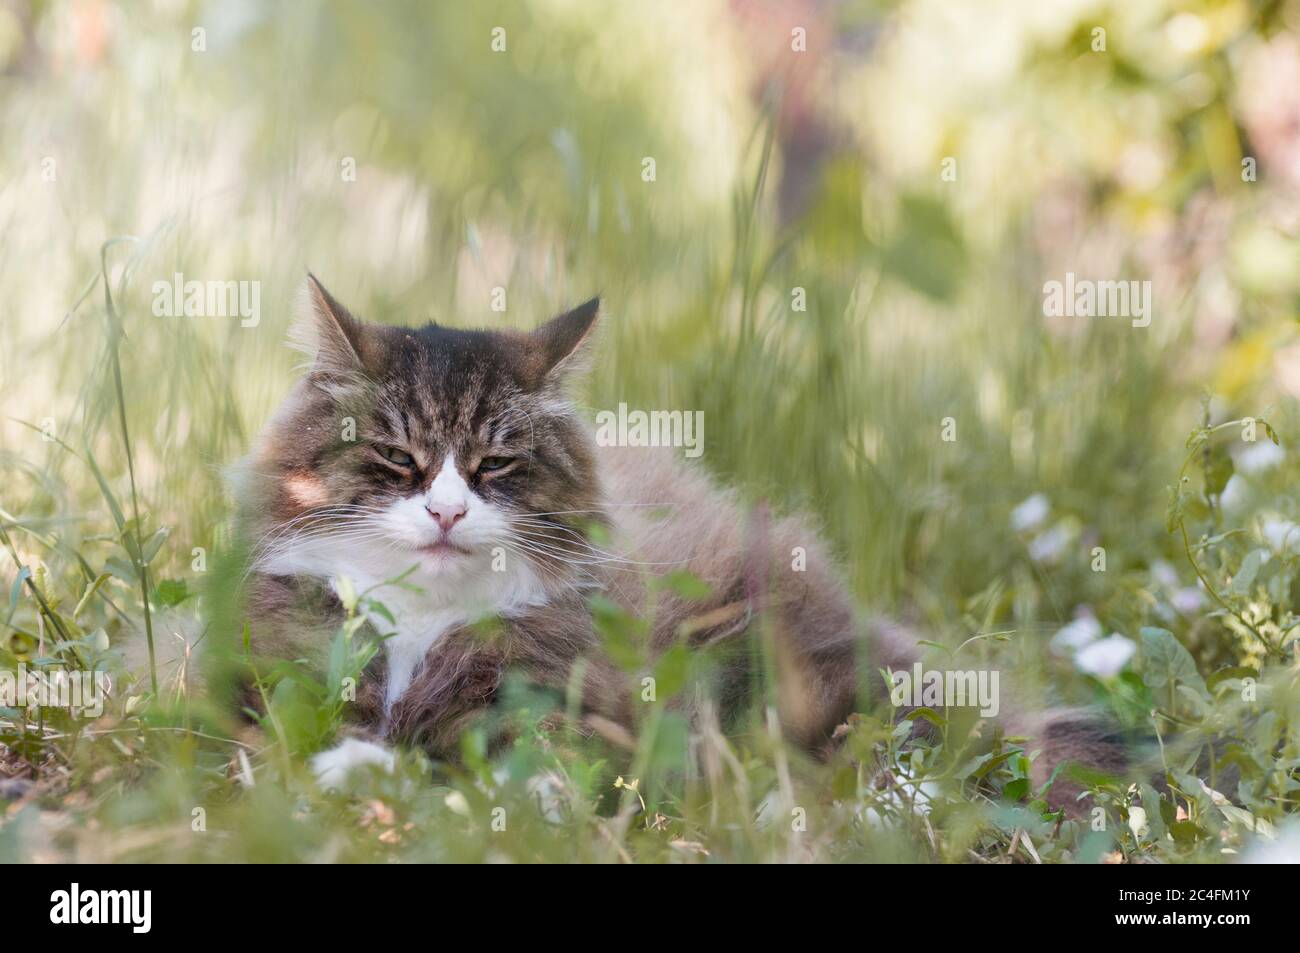 primo piano di un gatto bello che si posa sull'erba outdoor.calm e relax. divertente gatto Foto Stock